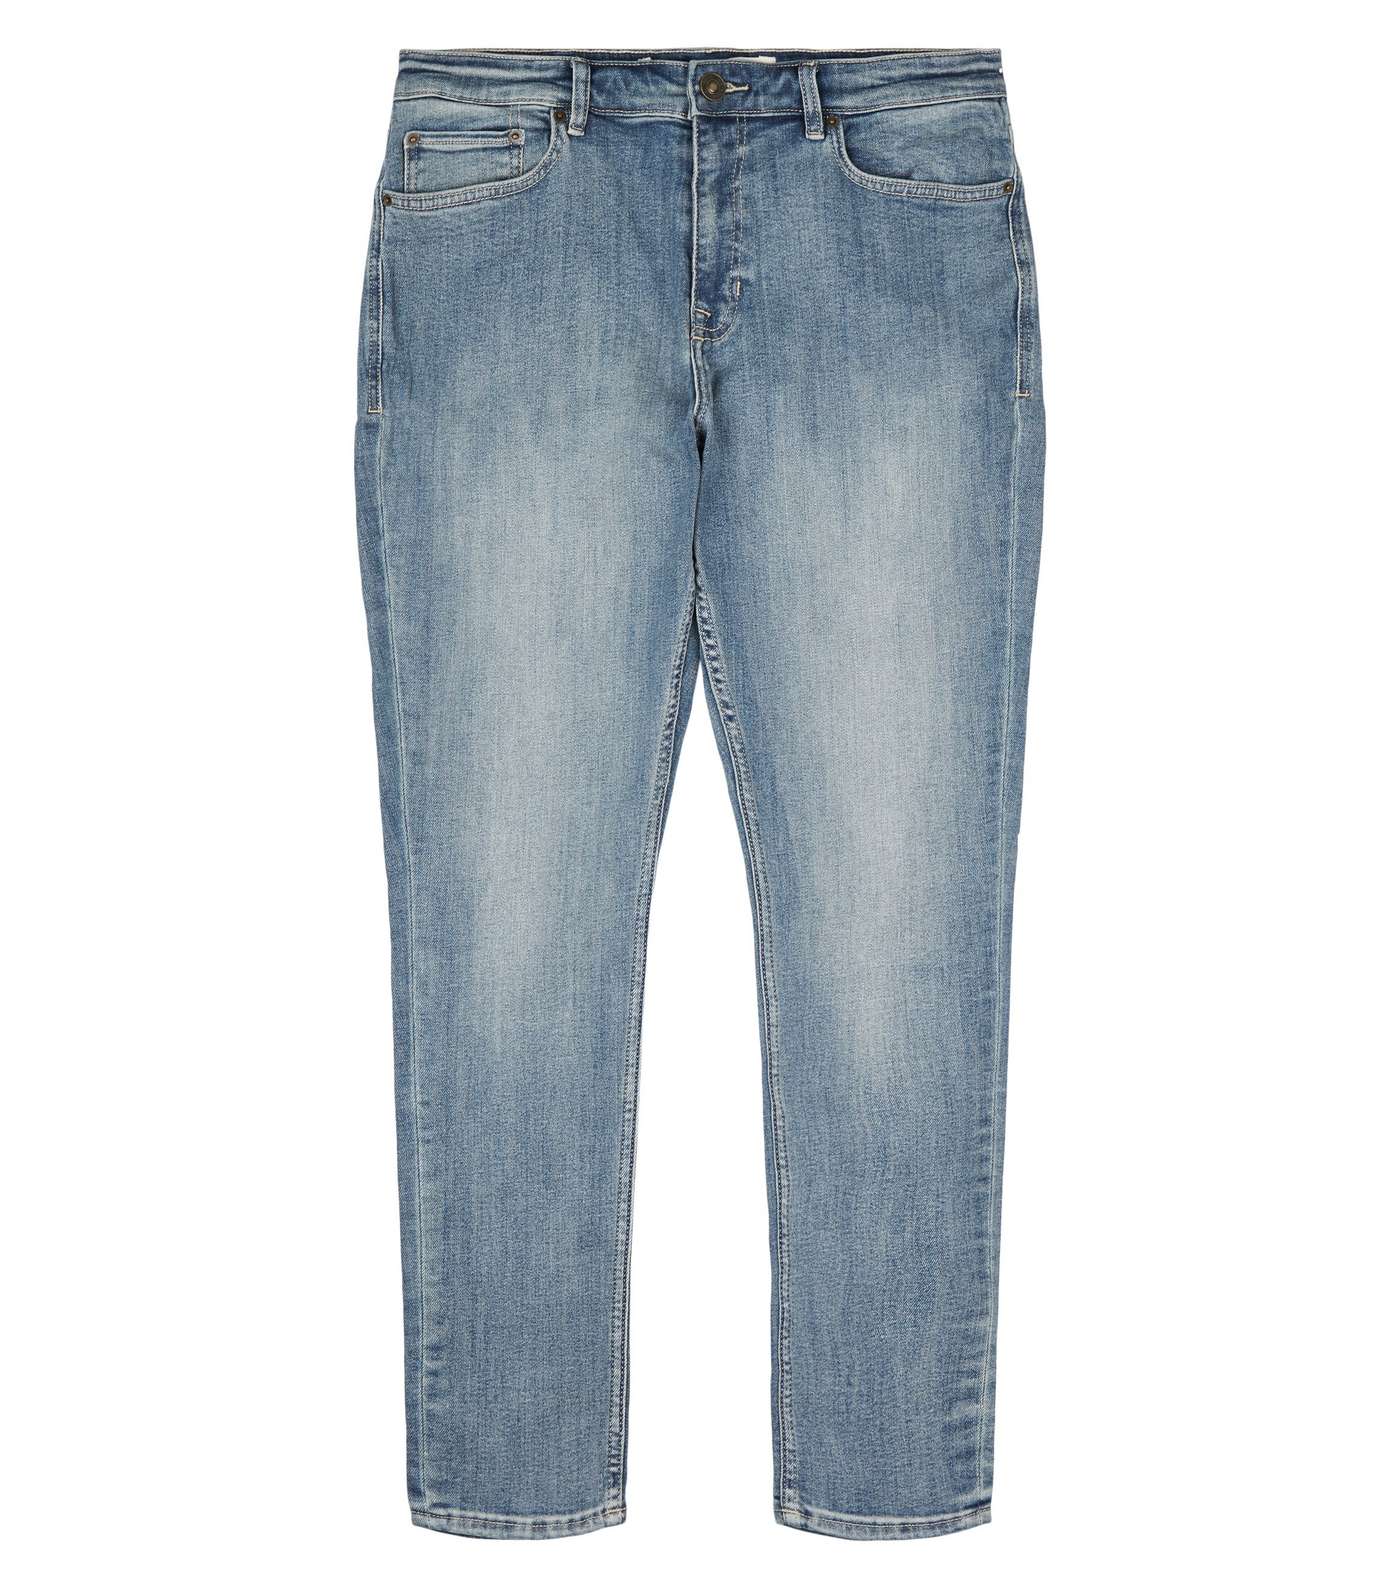 Pale Blue Vintage Wash Skinny Stretch Jeans Image 4